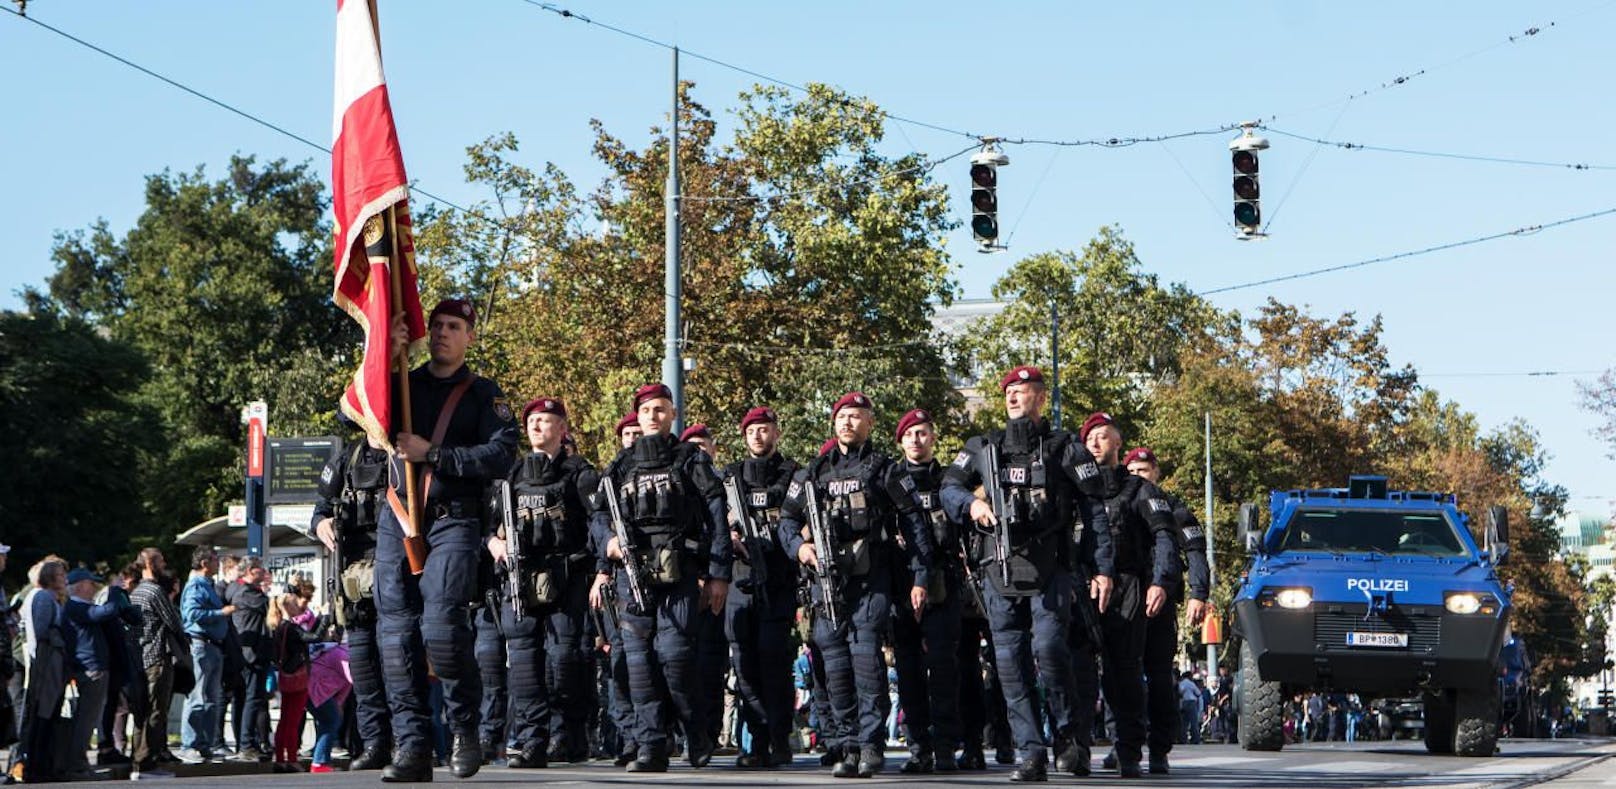 Bewaffnete Angehörigen der Polizei Sondereinheit Wega mit gepanzerten Polizeifahrzeug während einer Parade an der Ringstrasse in Wien, fotografiert am 21. September 2019. Die Wiener Polizei feiert 150 jähriges bestehen.